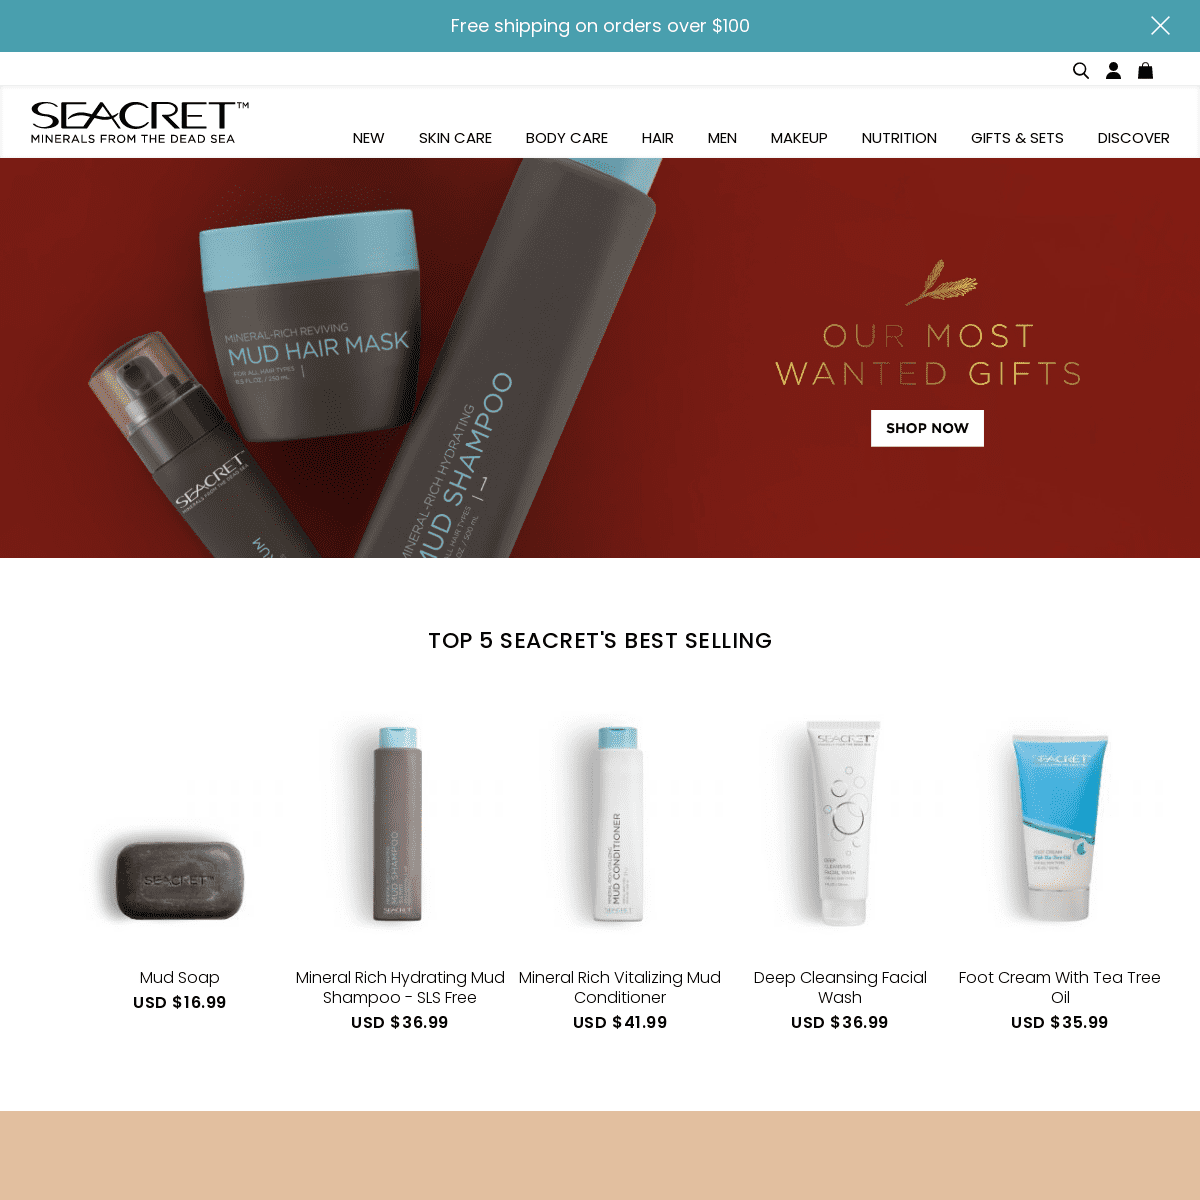 A complete backup of seacretspa.com